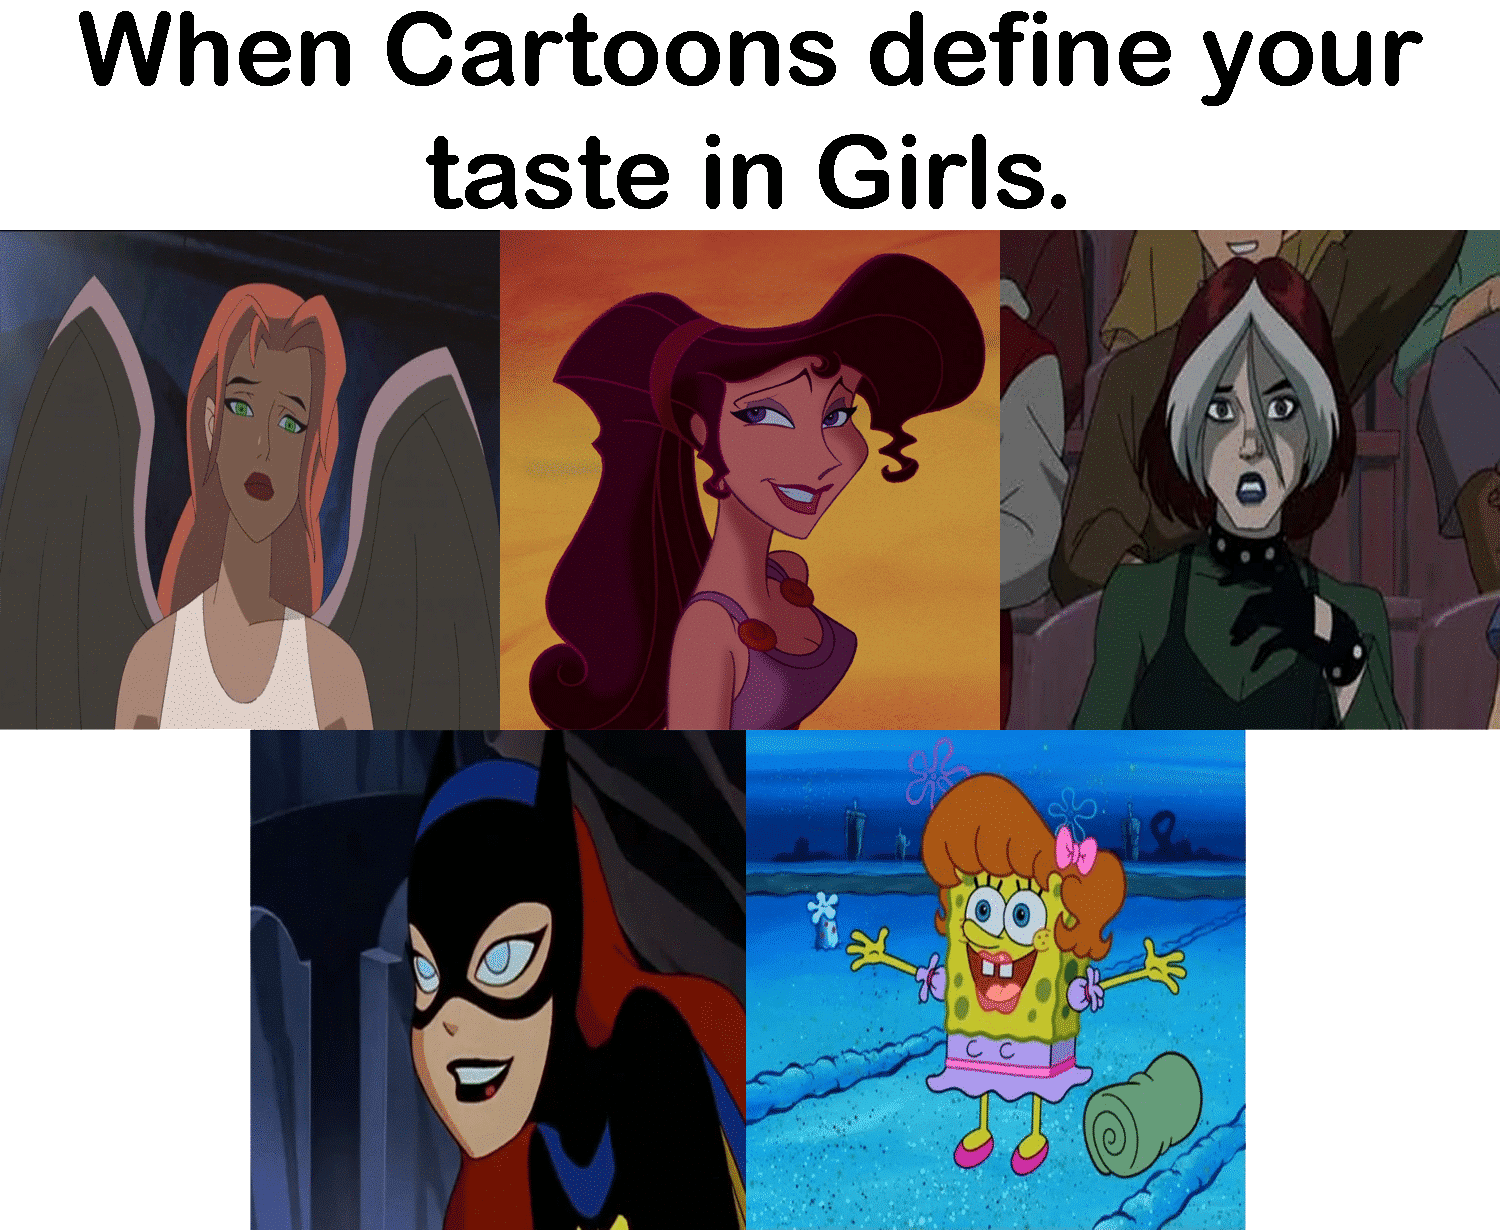 spongebob spongebob-memes spongebob text: When Cartoons define your taste in Girls, 08 